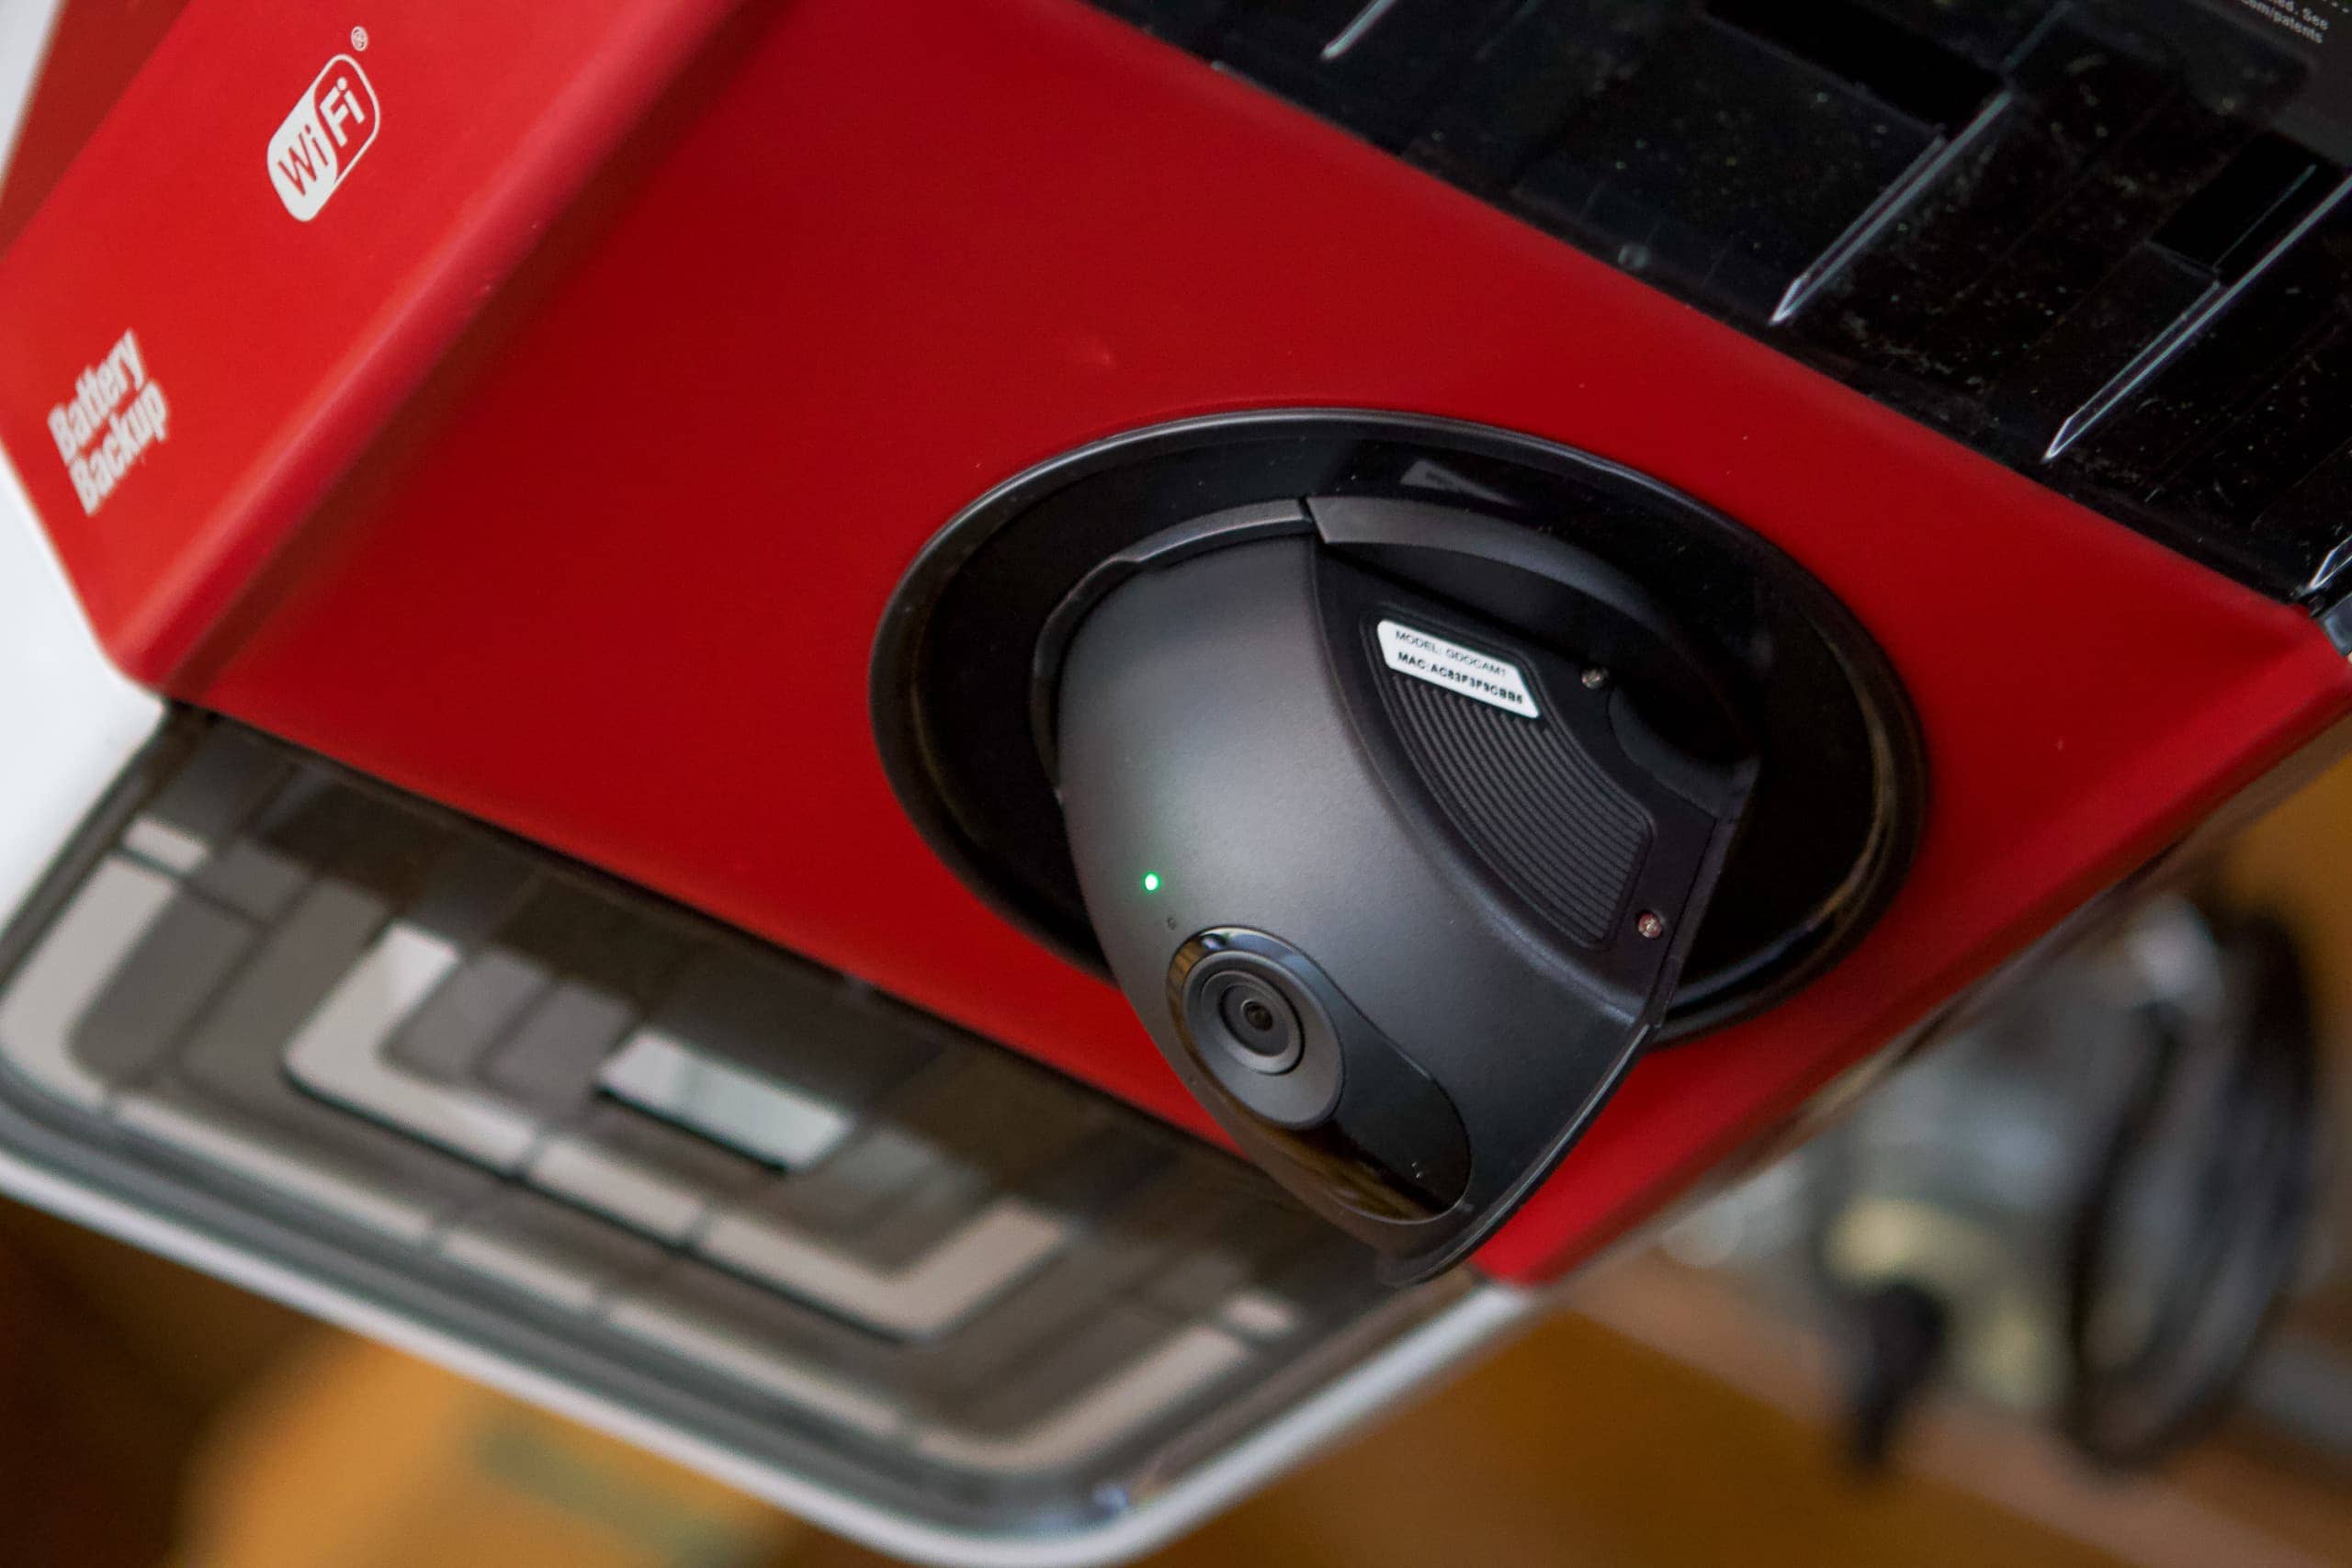 Camera in the smart garage door opener